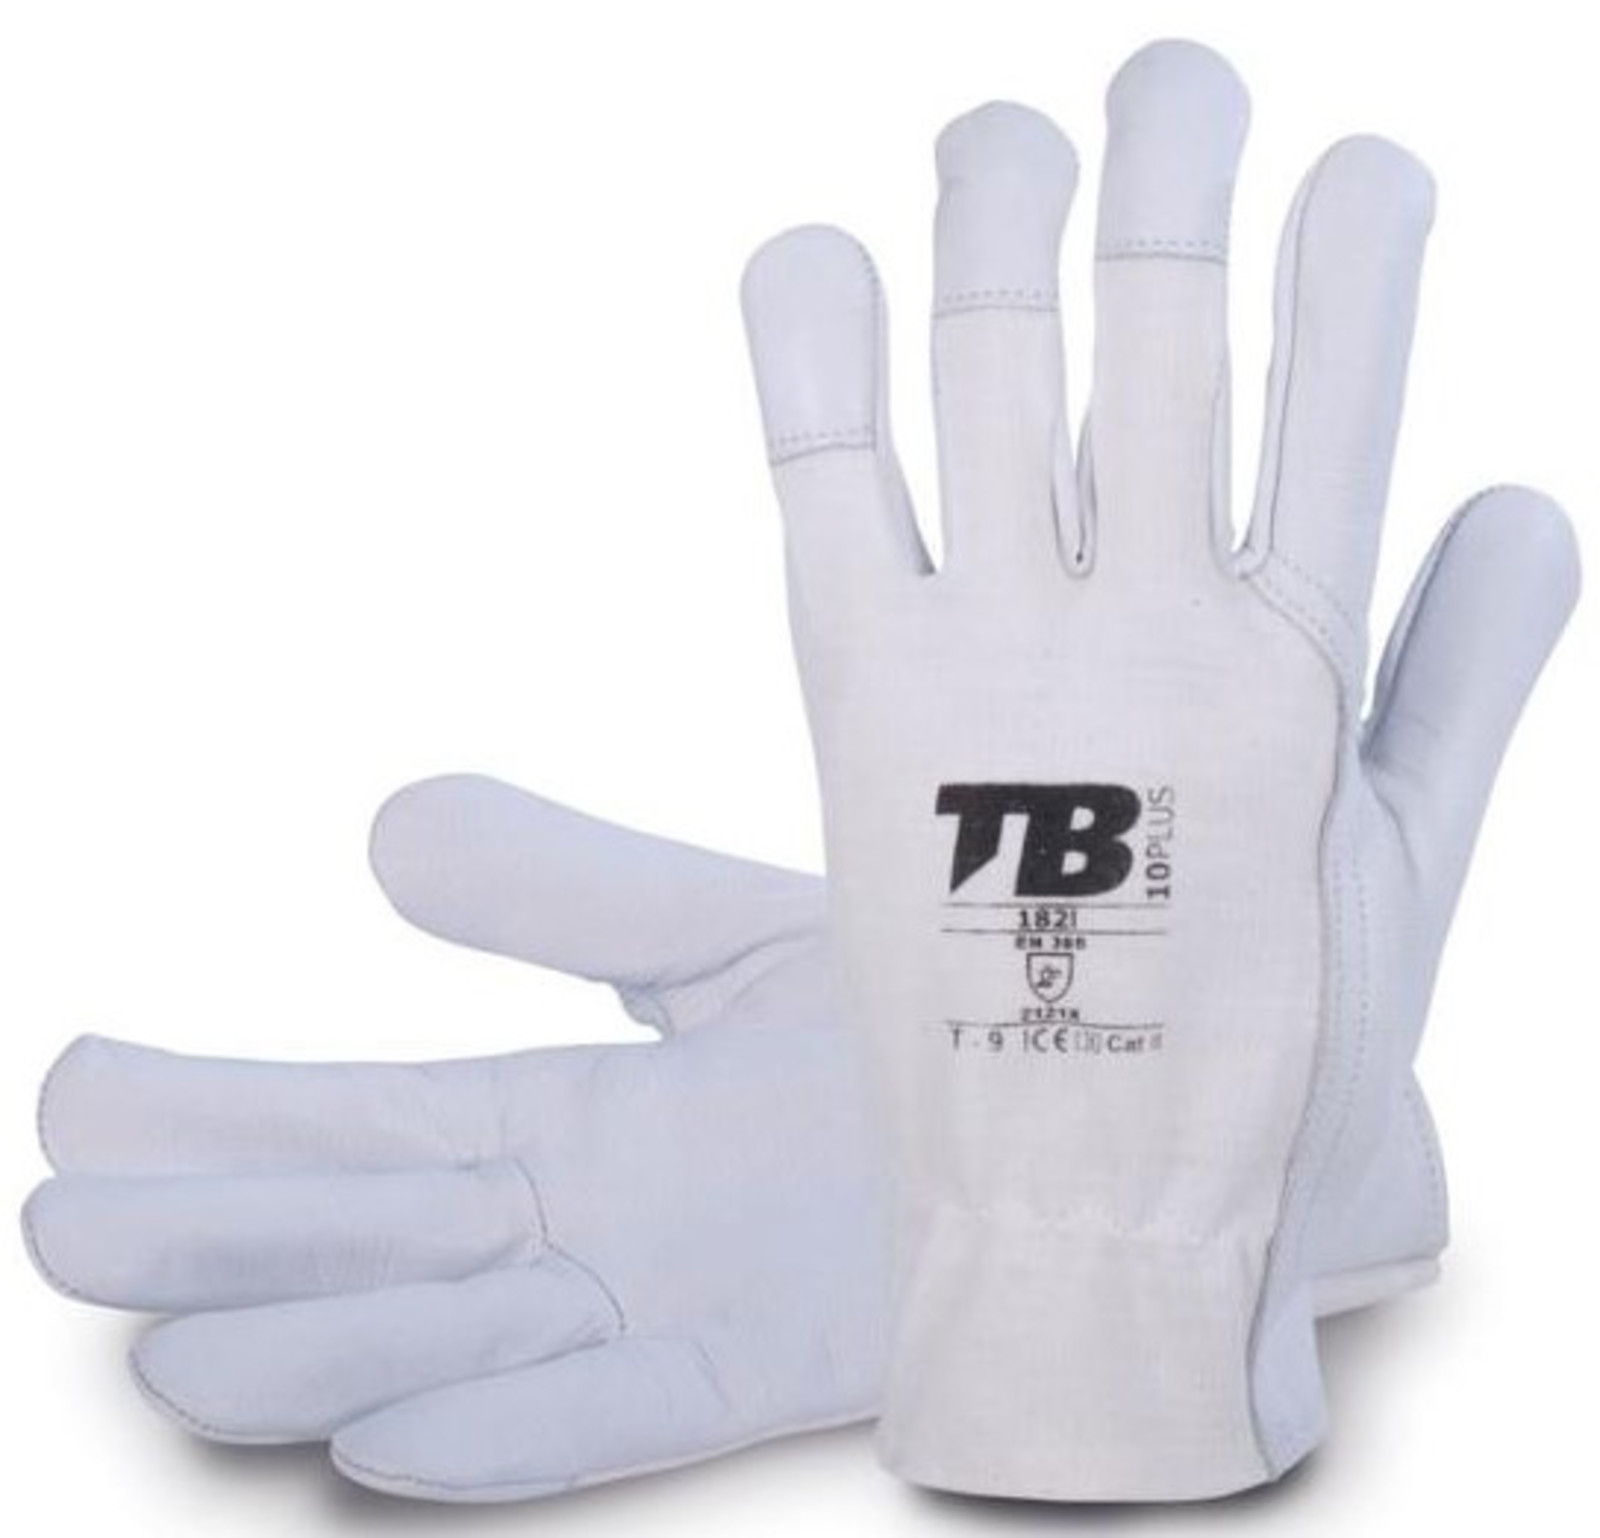 Pracovné rukavice TB 182IB kombinované - veľkosť: 9/L